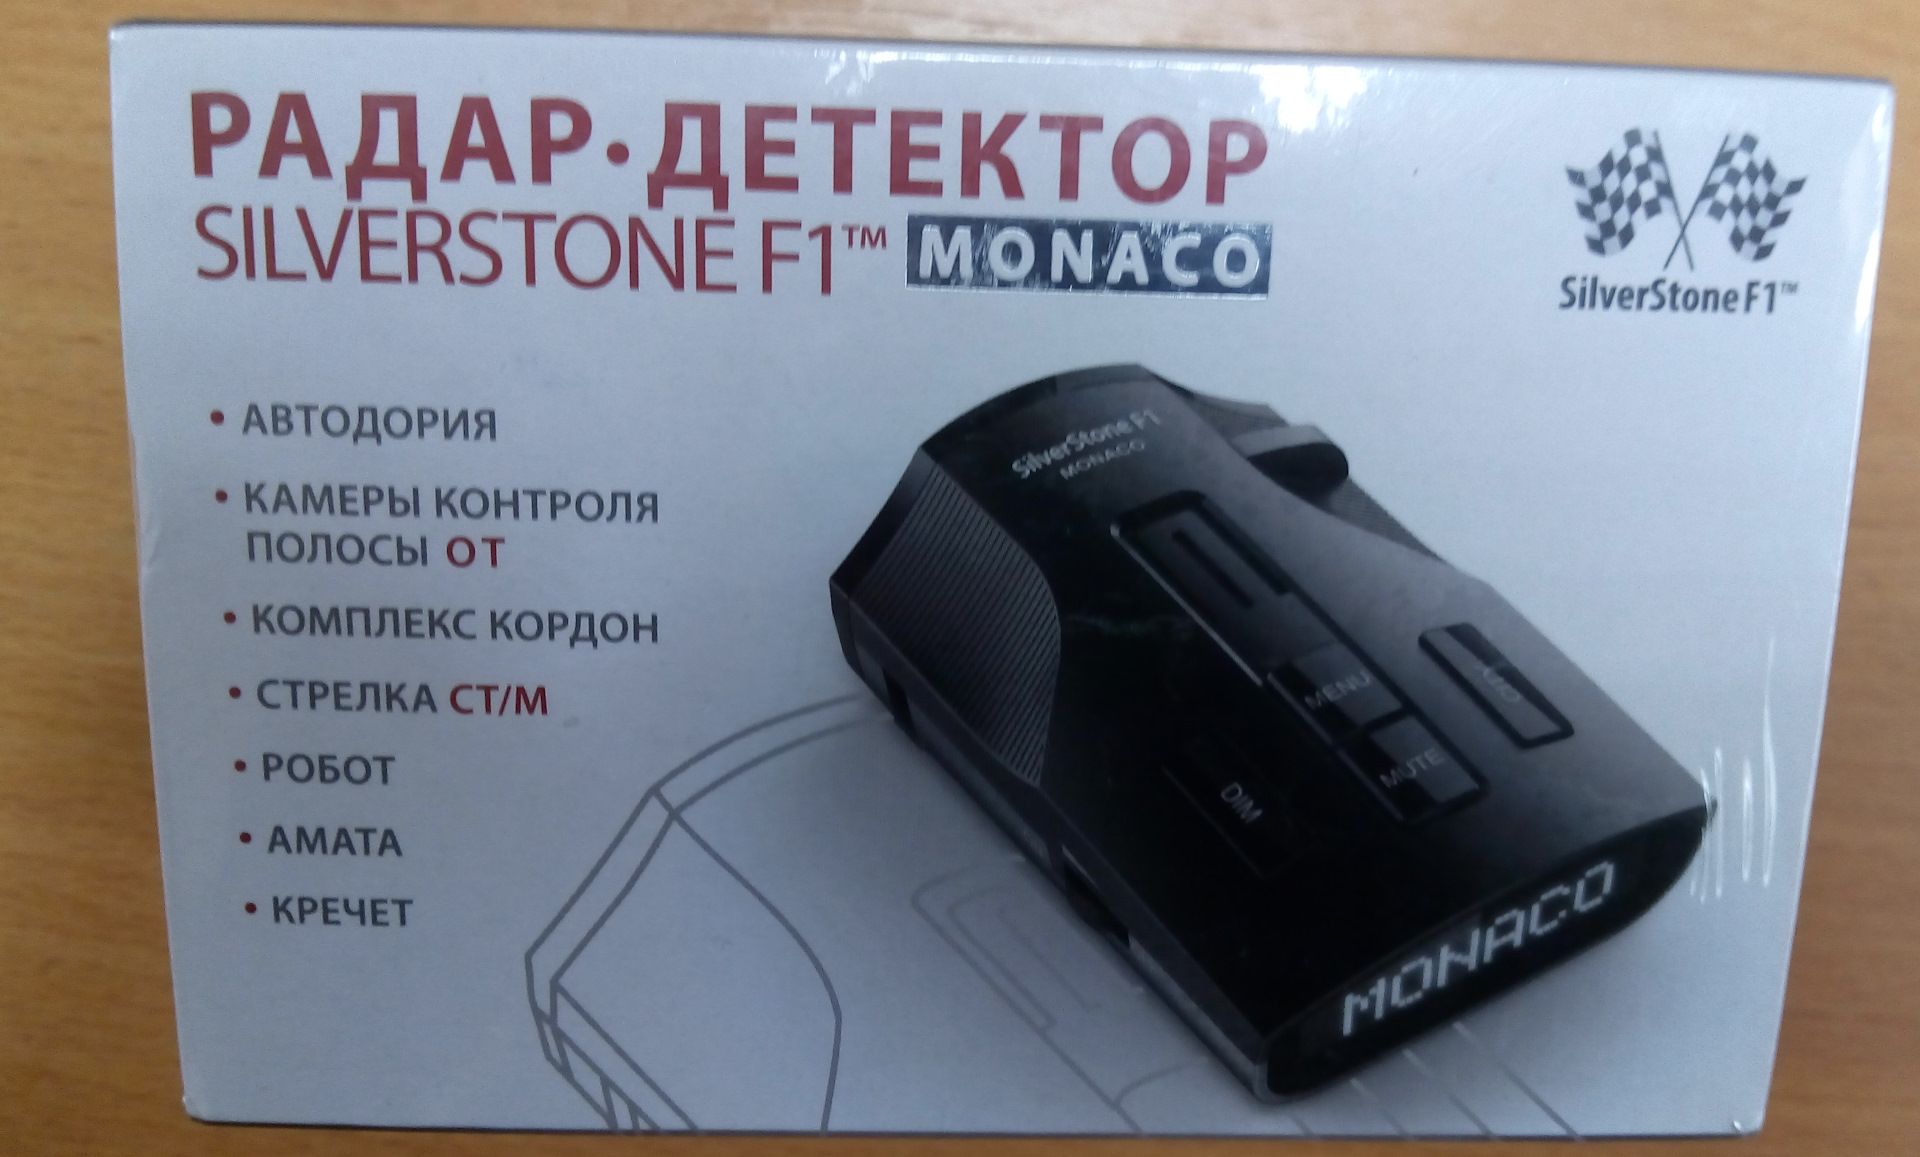 Радар сильверстоун ф1. Радар-детектор Silverstone. Silverstone f1 Monaco. Радар-детектор Silverstone f1 Monaco GS обновление. Плата для антирадара Silverstone f1 Monaco.